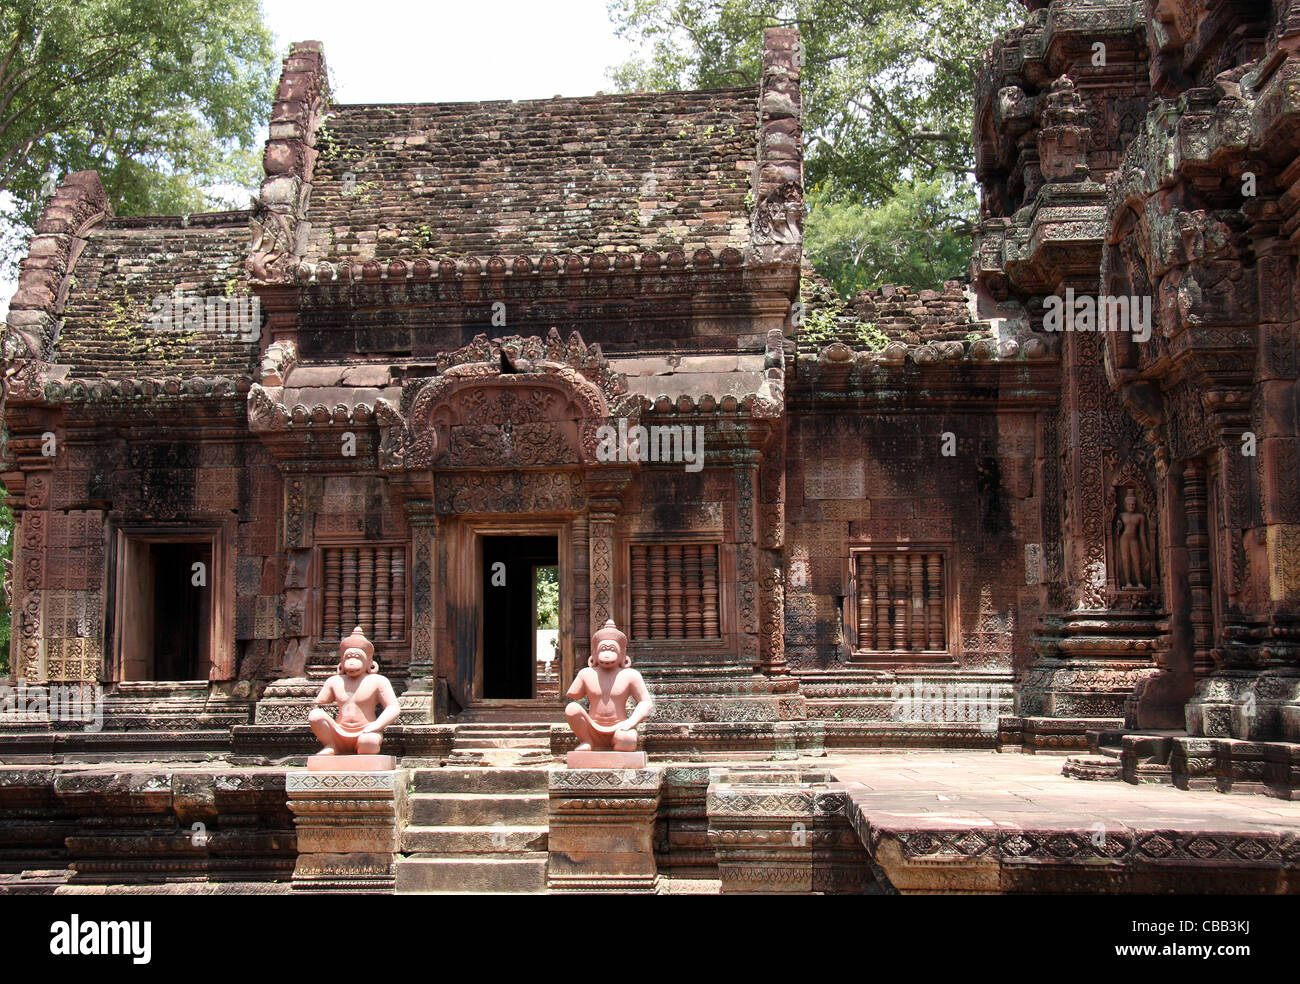 Monkey Statue in corrispondenza di Banteay Srei tempio vicino a Siem Reap, Cambogia Foto Stock